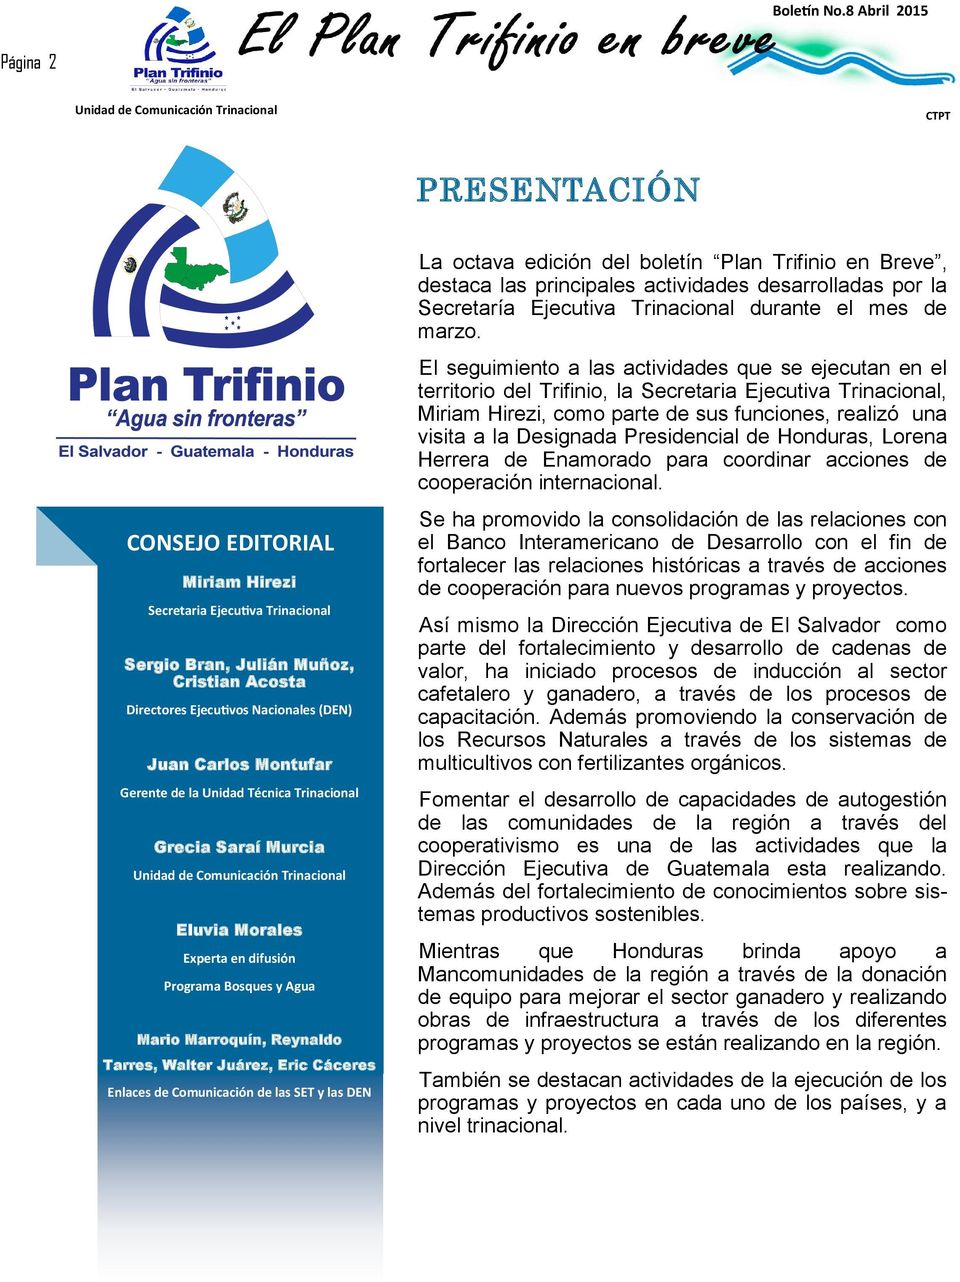 de las SET y las DEN La octava edición del boletín Plan Trifinio en Breve, destaca las principales actividades desarrolladas por la Secretaría Ejecutiva Trinacional durante el mes de marzo.